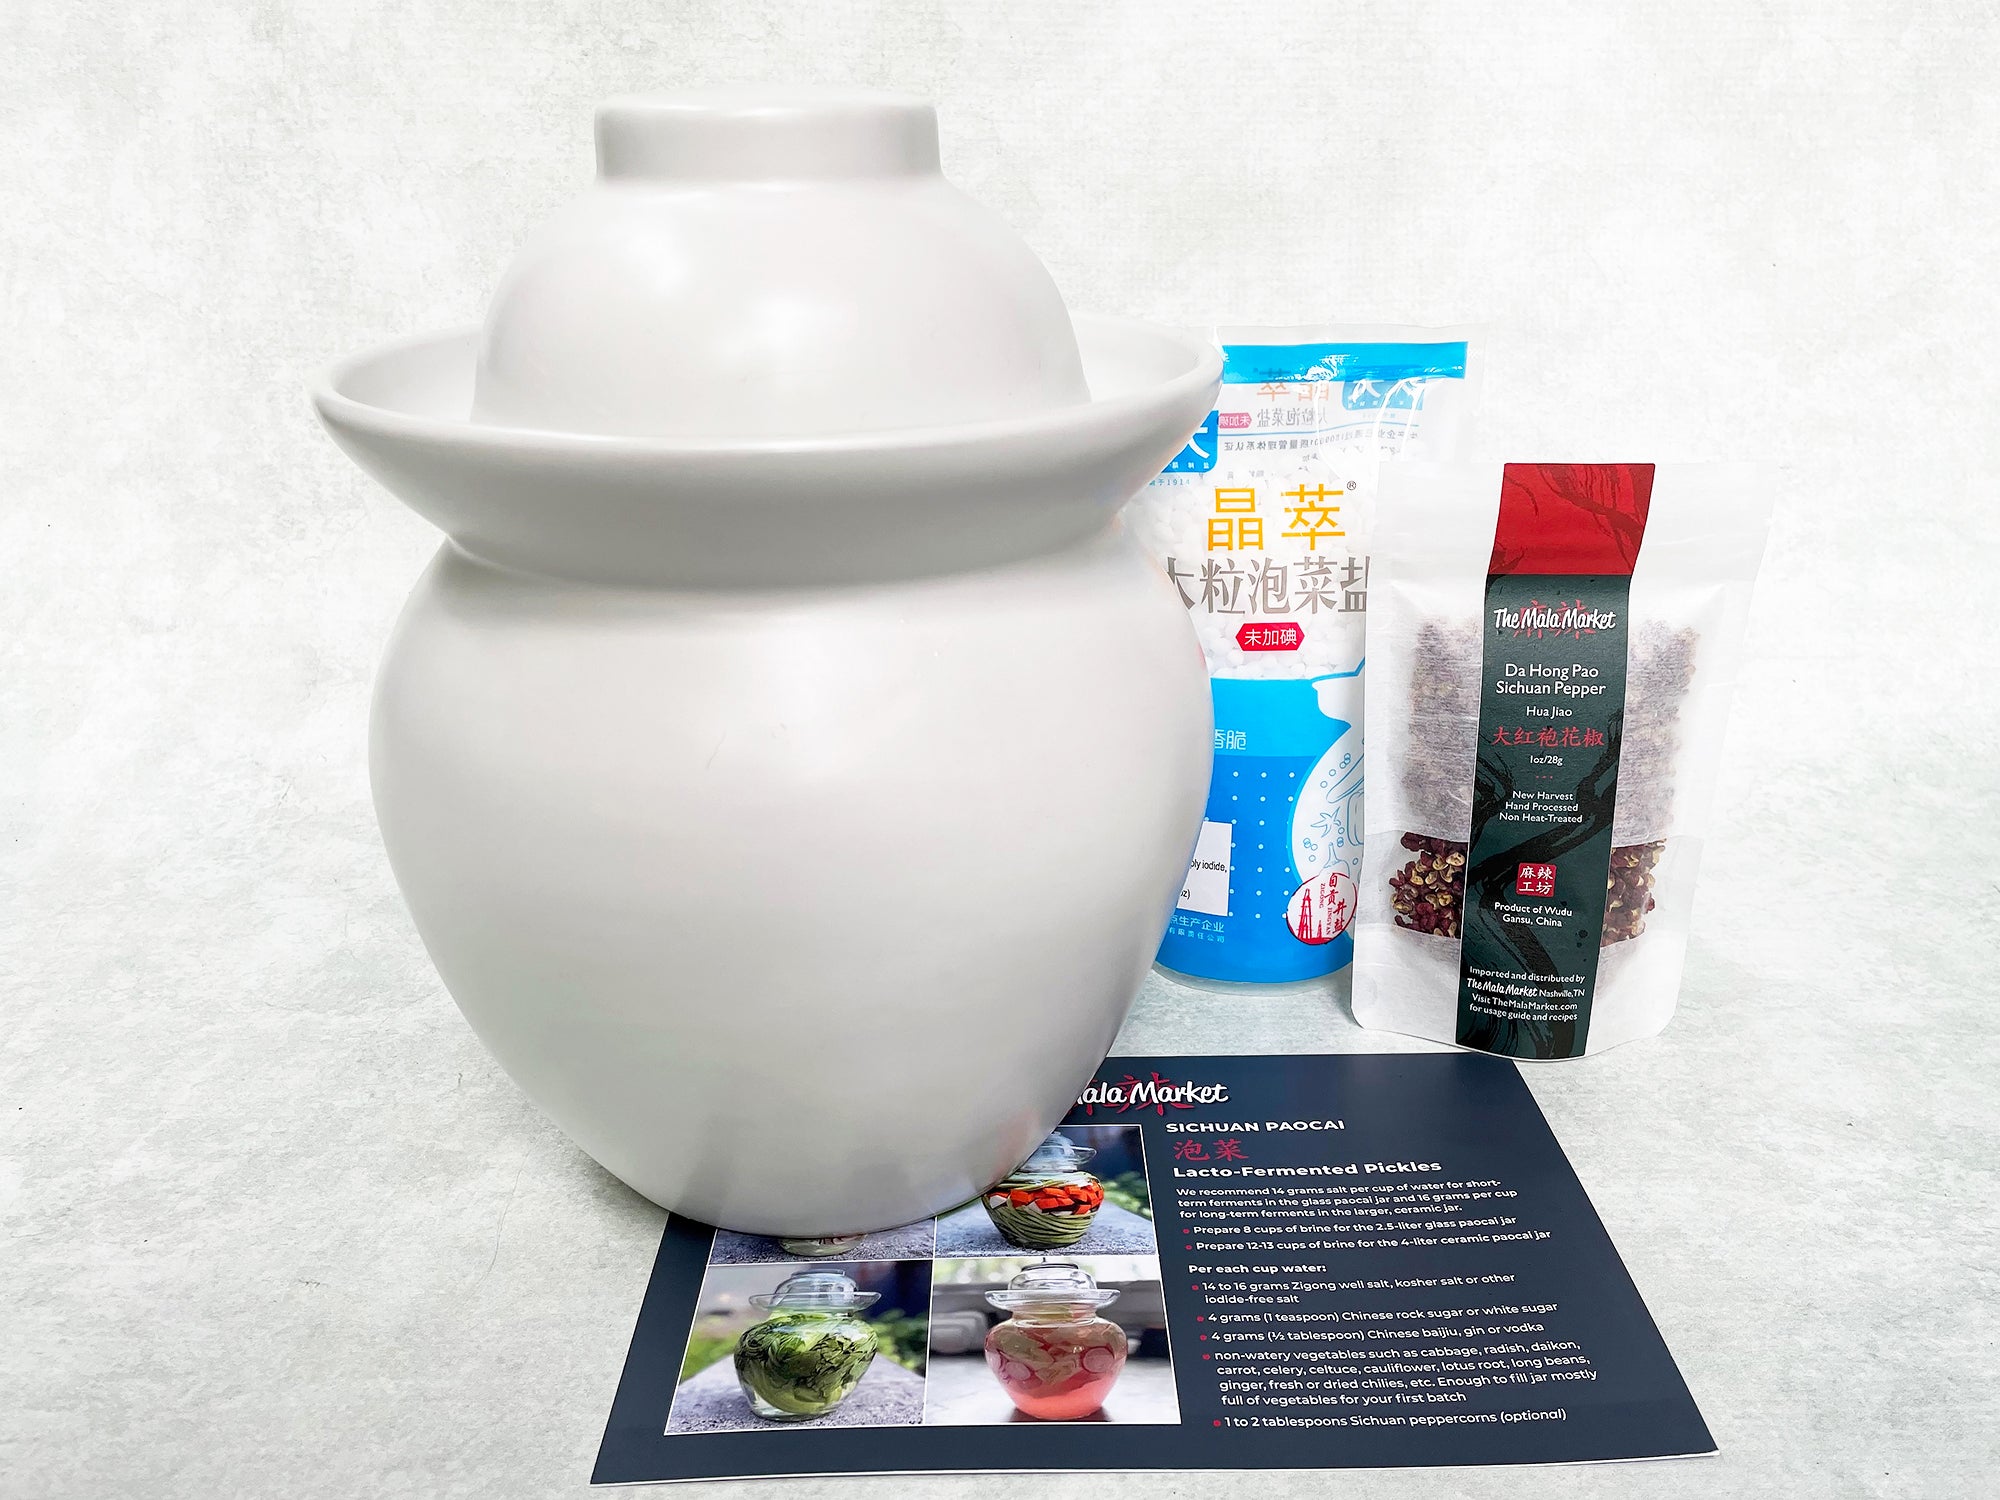 White Chinese pickling jar and kit